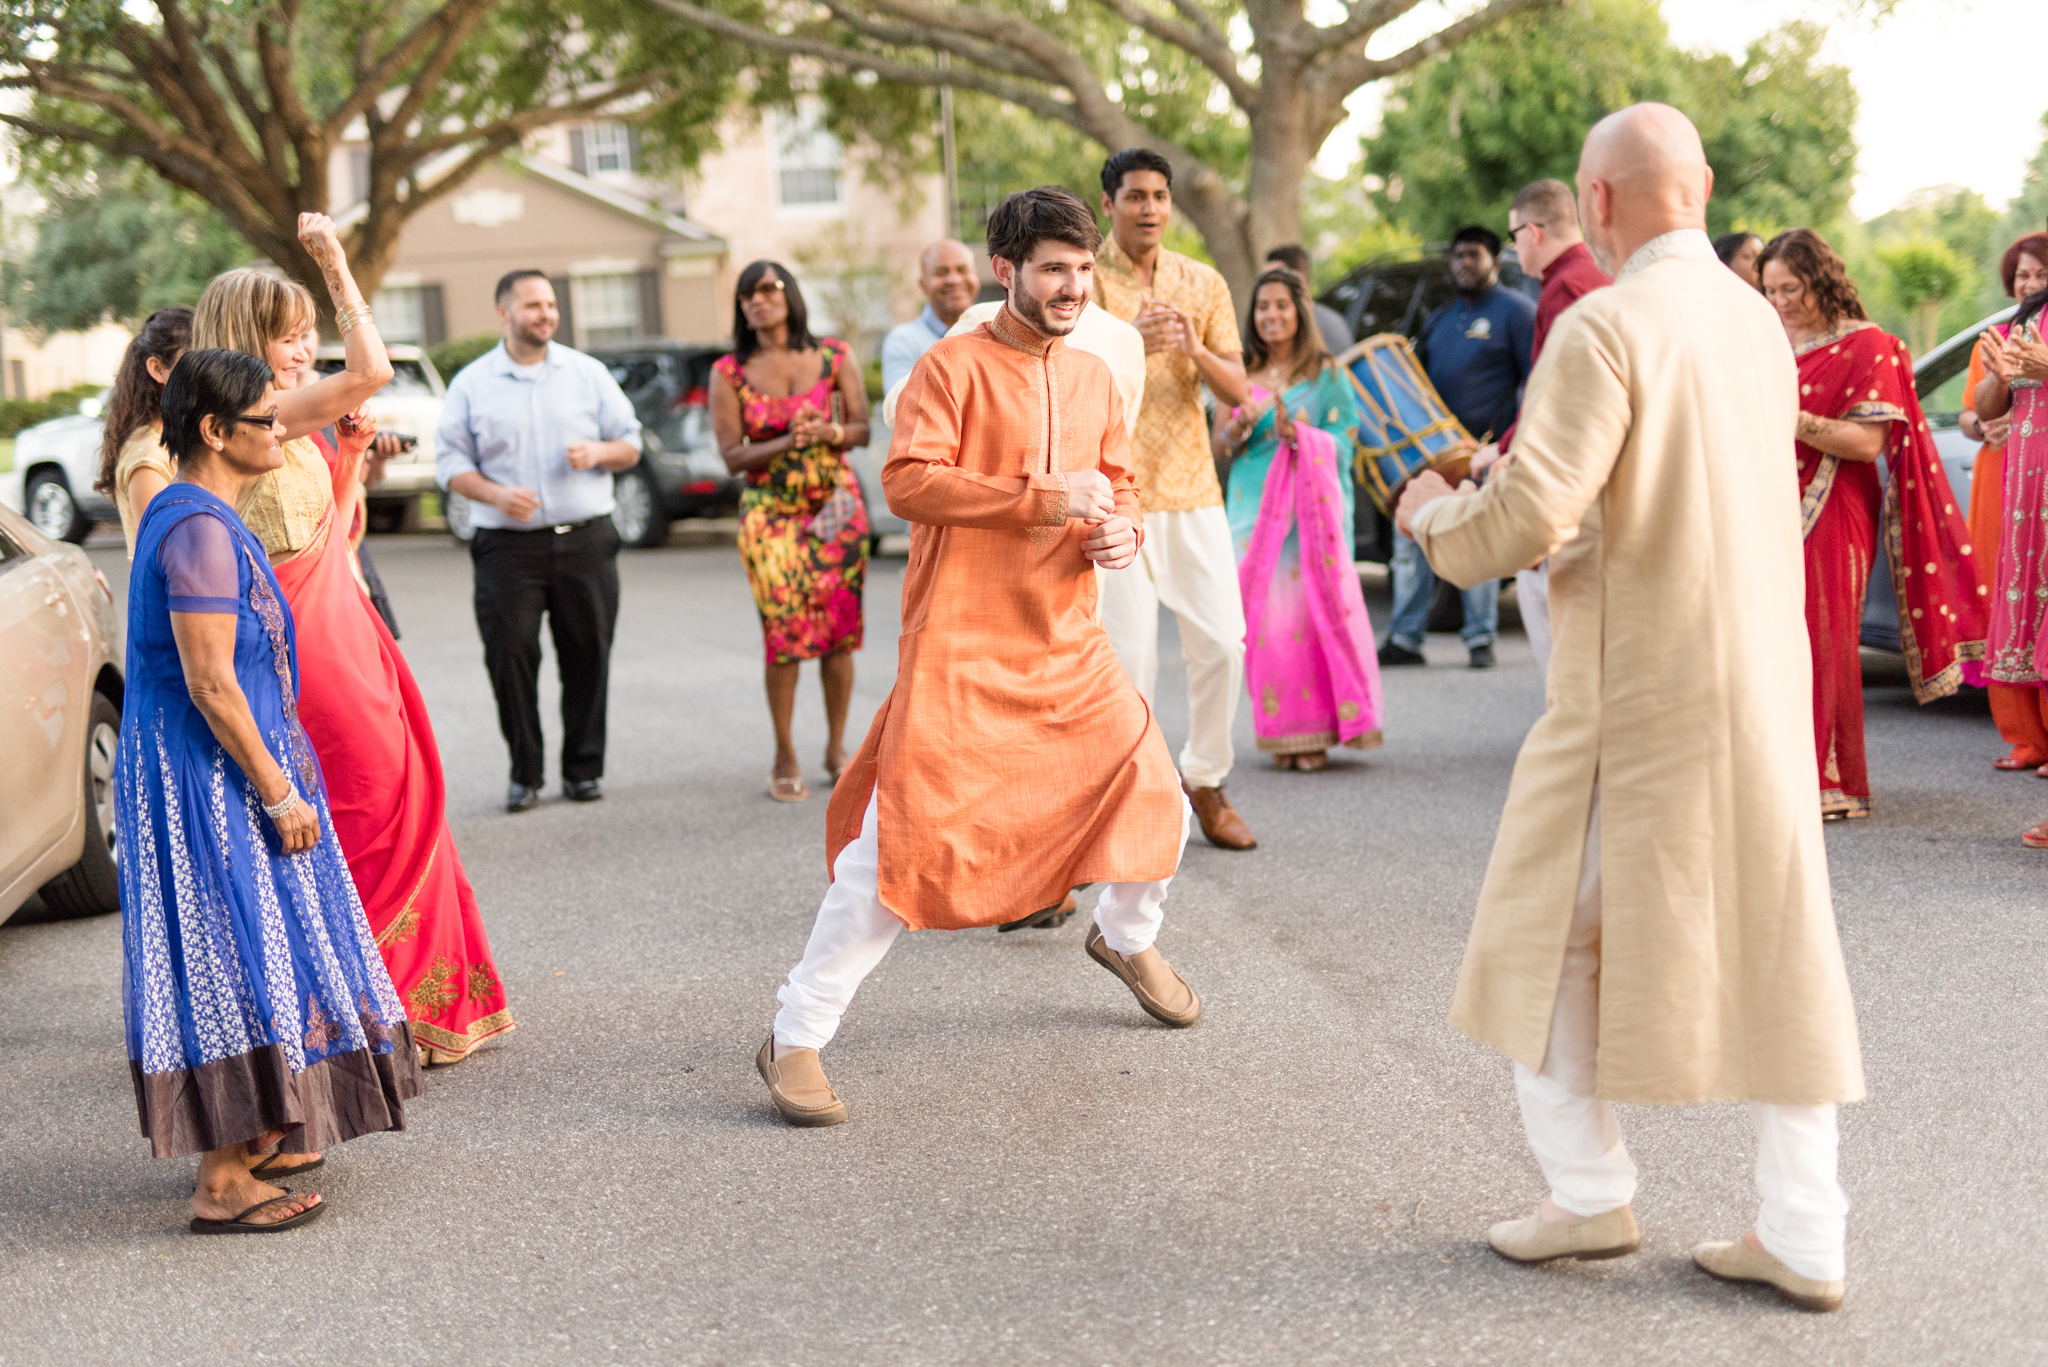 Wedding guests dance in street.